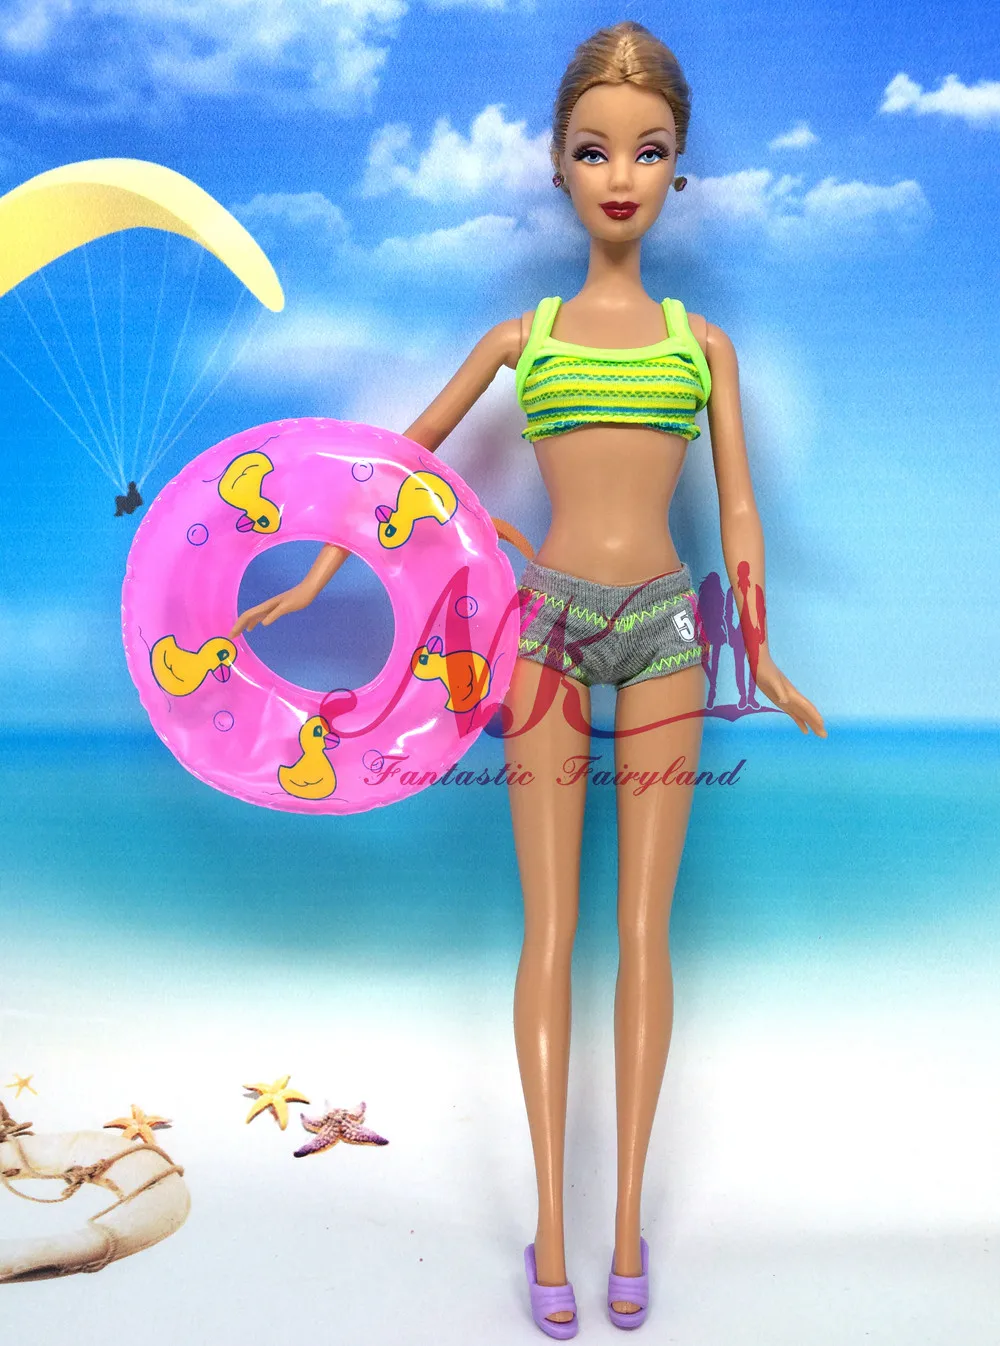 NK купальники для кукол одежда 5 случайных пляжный купальник+ 5 тапочек+ 5 плавательных кругов для куклы Барби аксессуары наряды игрушки DZ